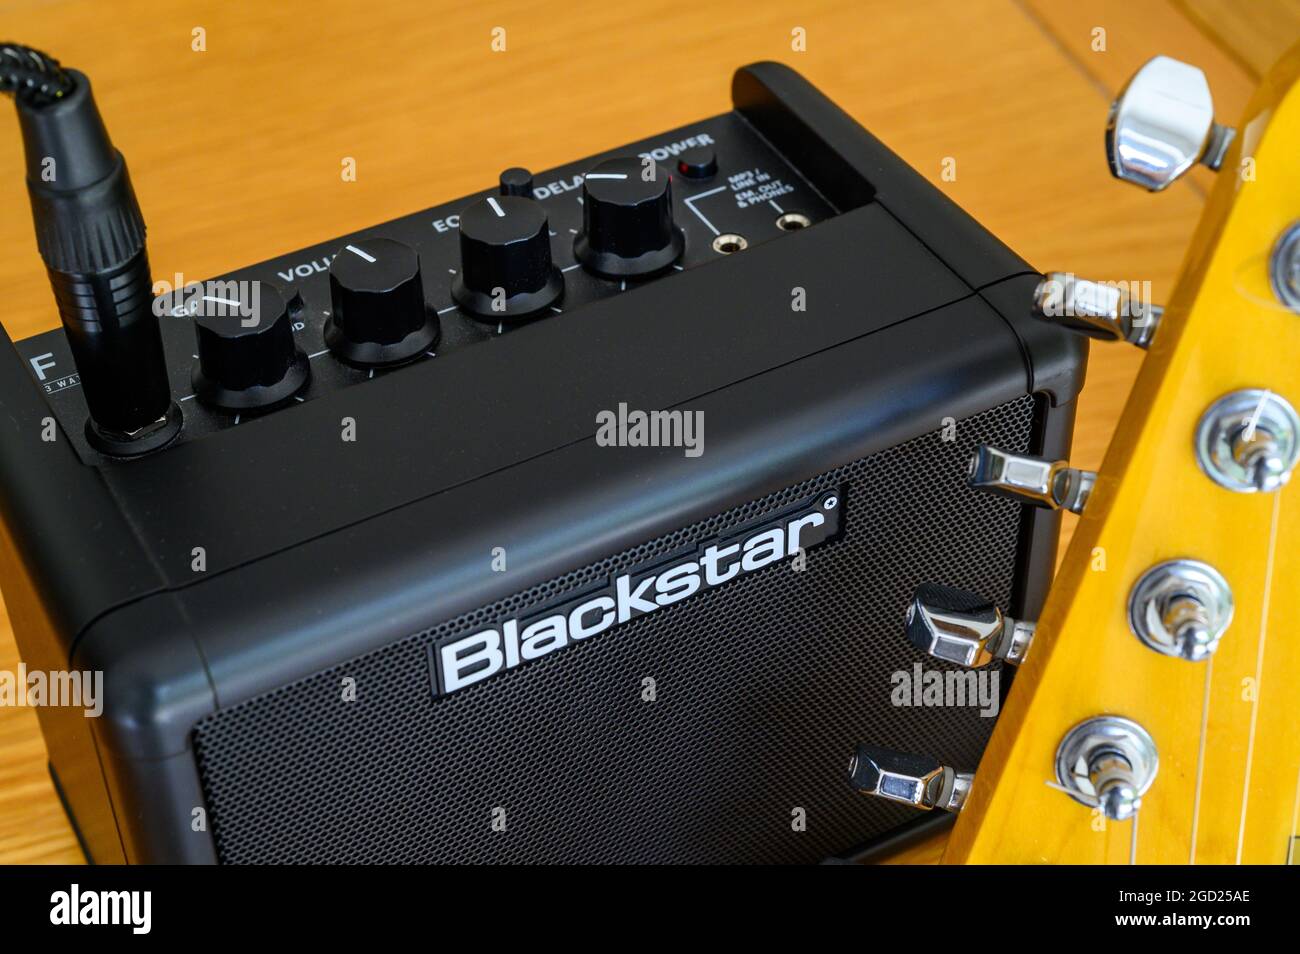 Nahaufnahme von Blackstar Fly 3 Watt Mini Amp, einem tragbaren Verstärker  für E-Gitarre Stockfotografie - Alamy